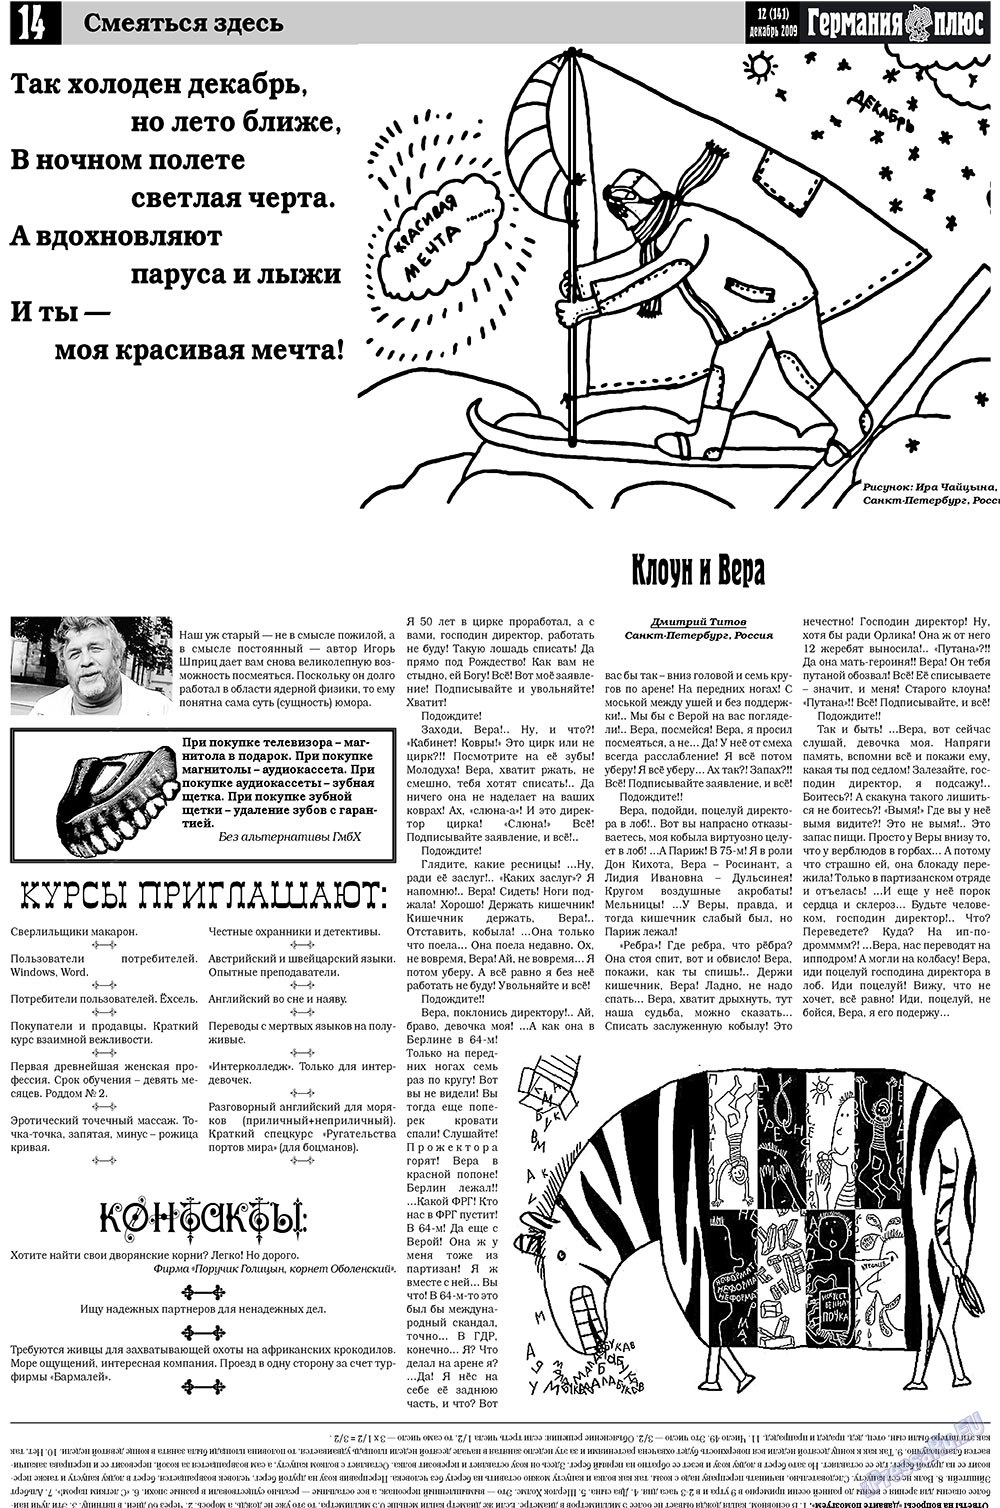 Германия плюс, газета. 2009 №12 стр.14